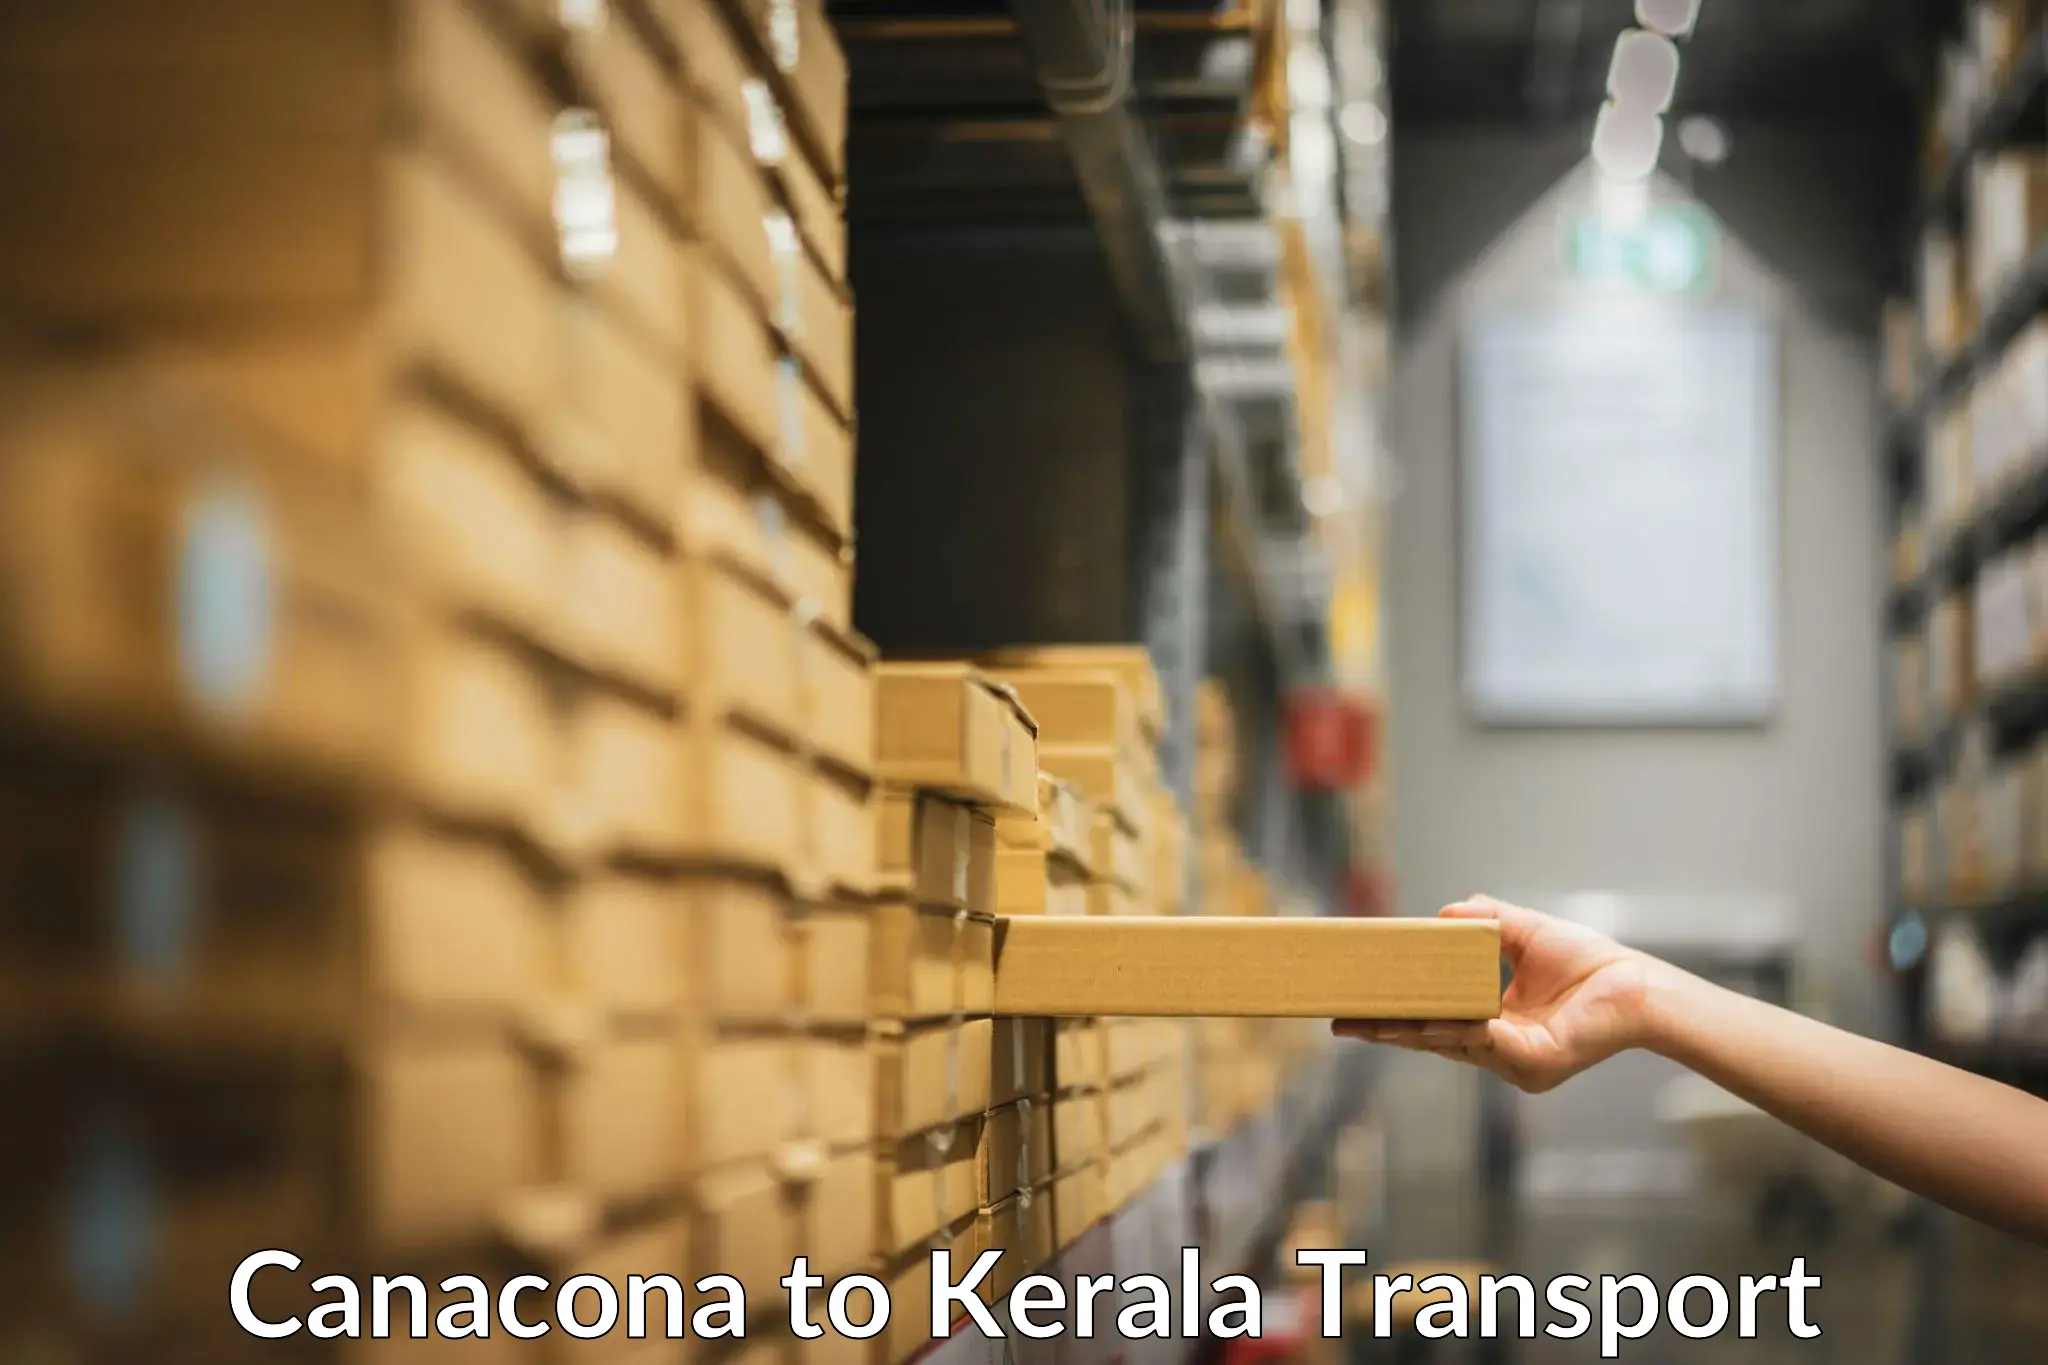 Container transport service Canacona to Kuthuparamba